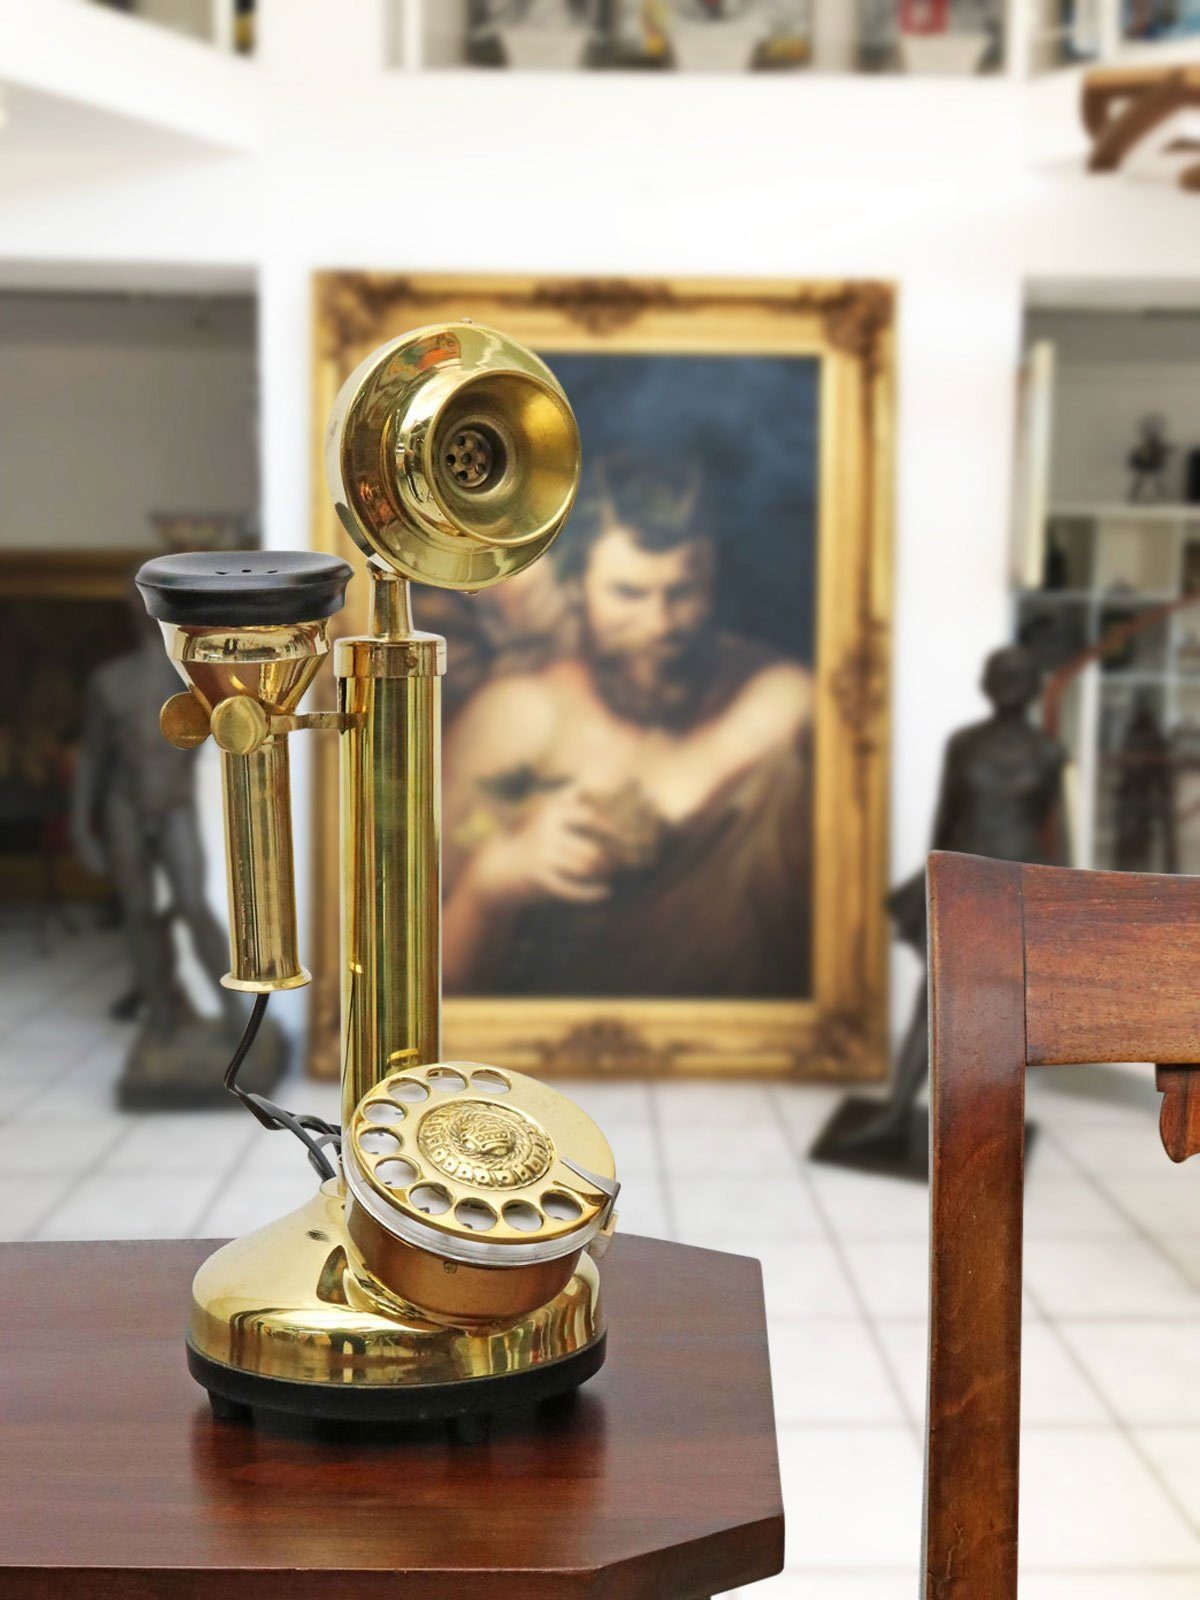 Telefon im Antik-Stil Dekoration ohne Funktion Wählscheibentelefon 